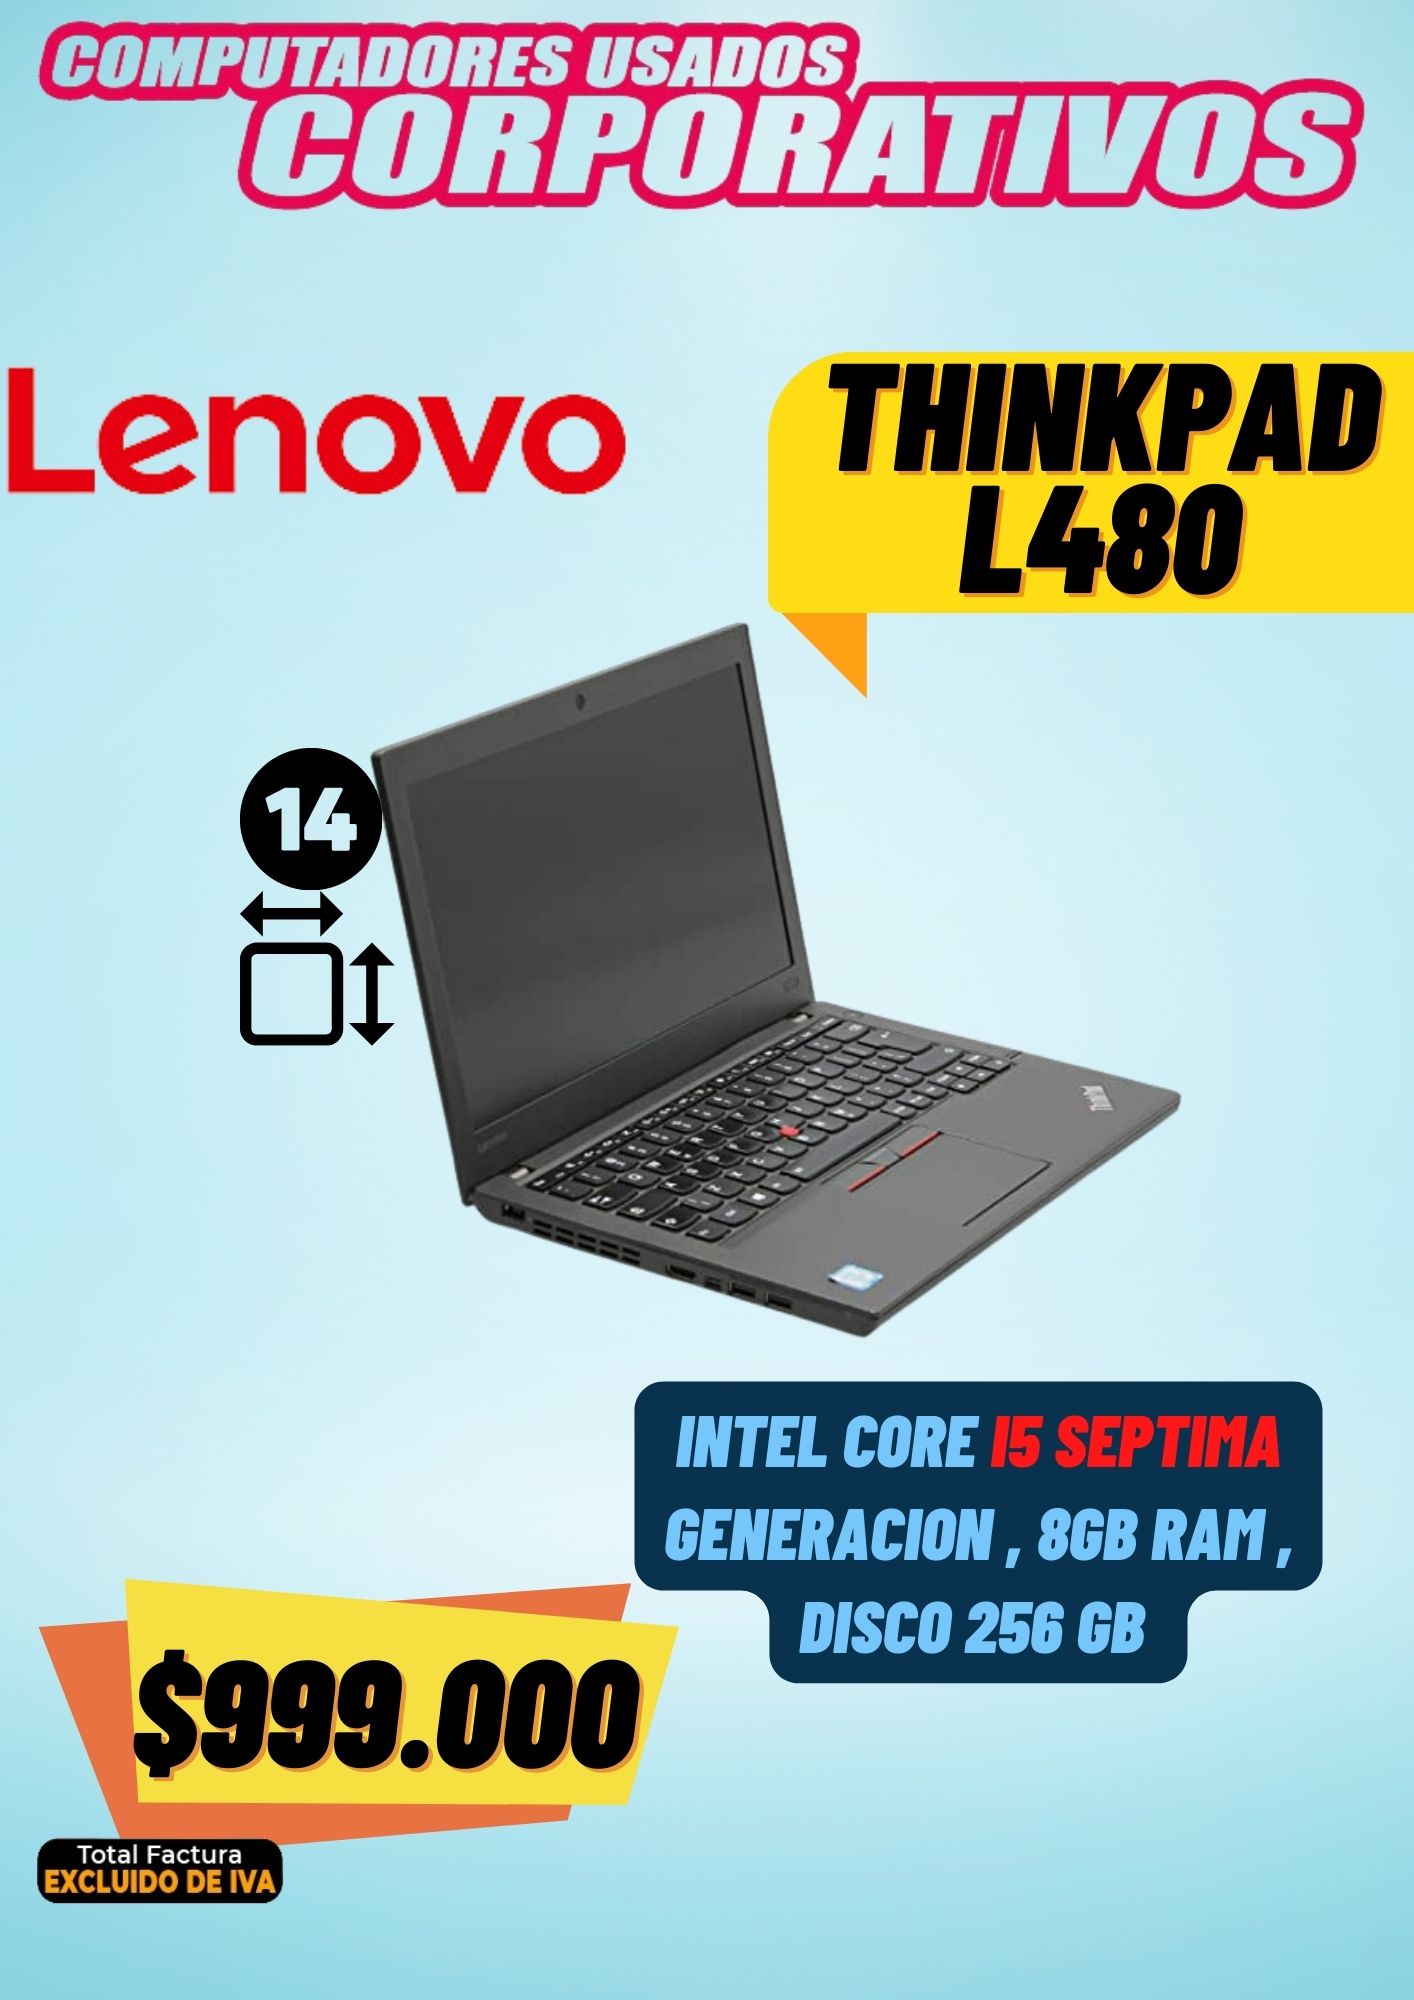 Lenovo Thinkpad L480 I5 Sexta